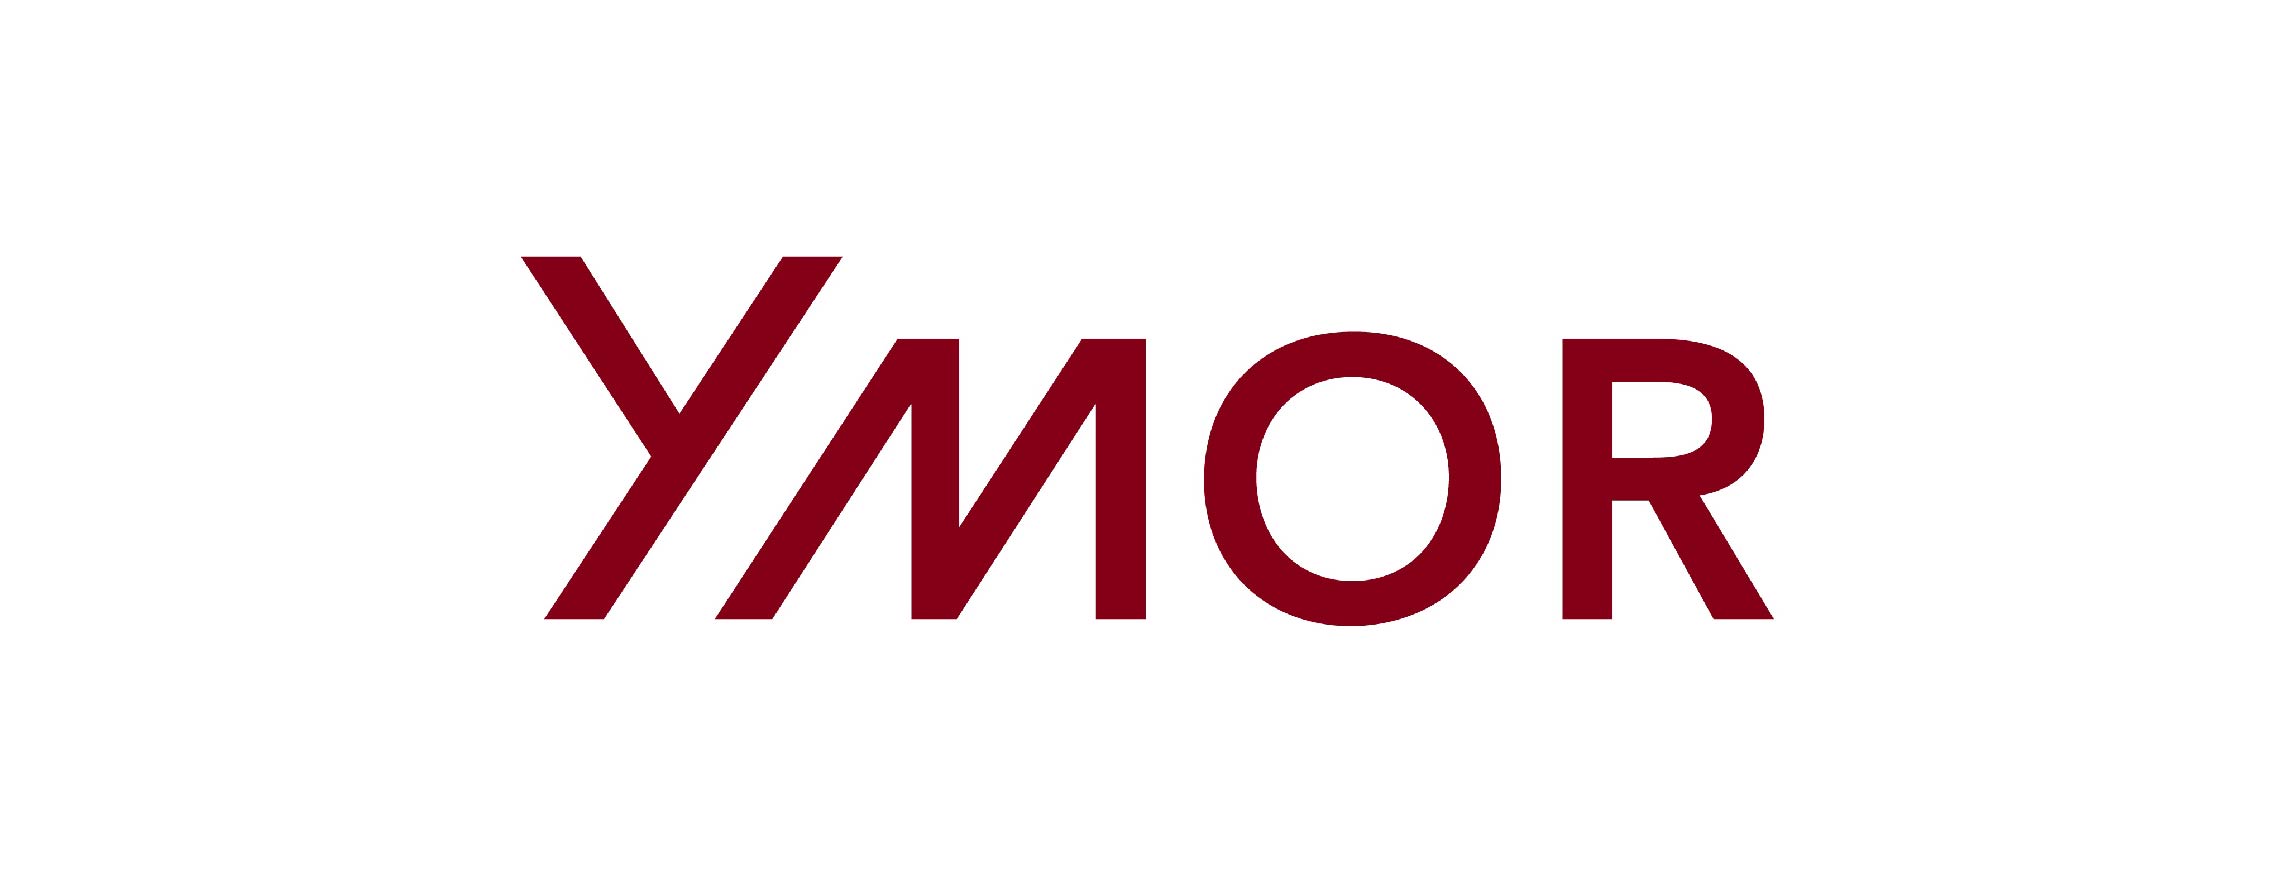 Logo Ymor crop